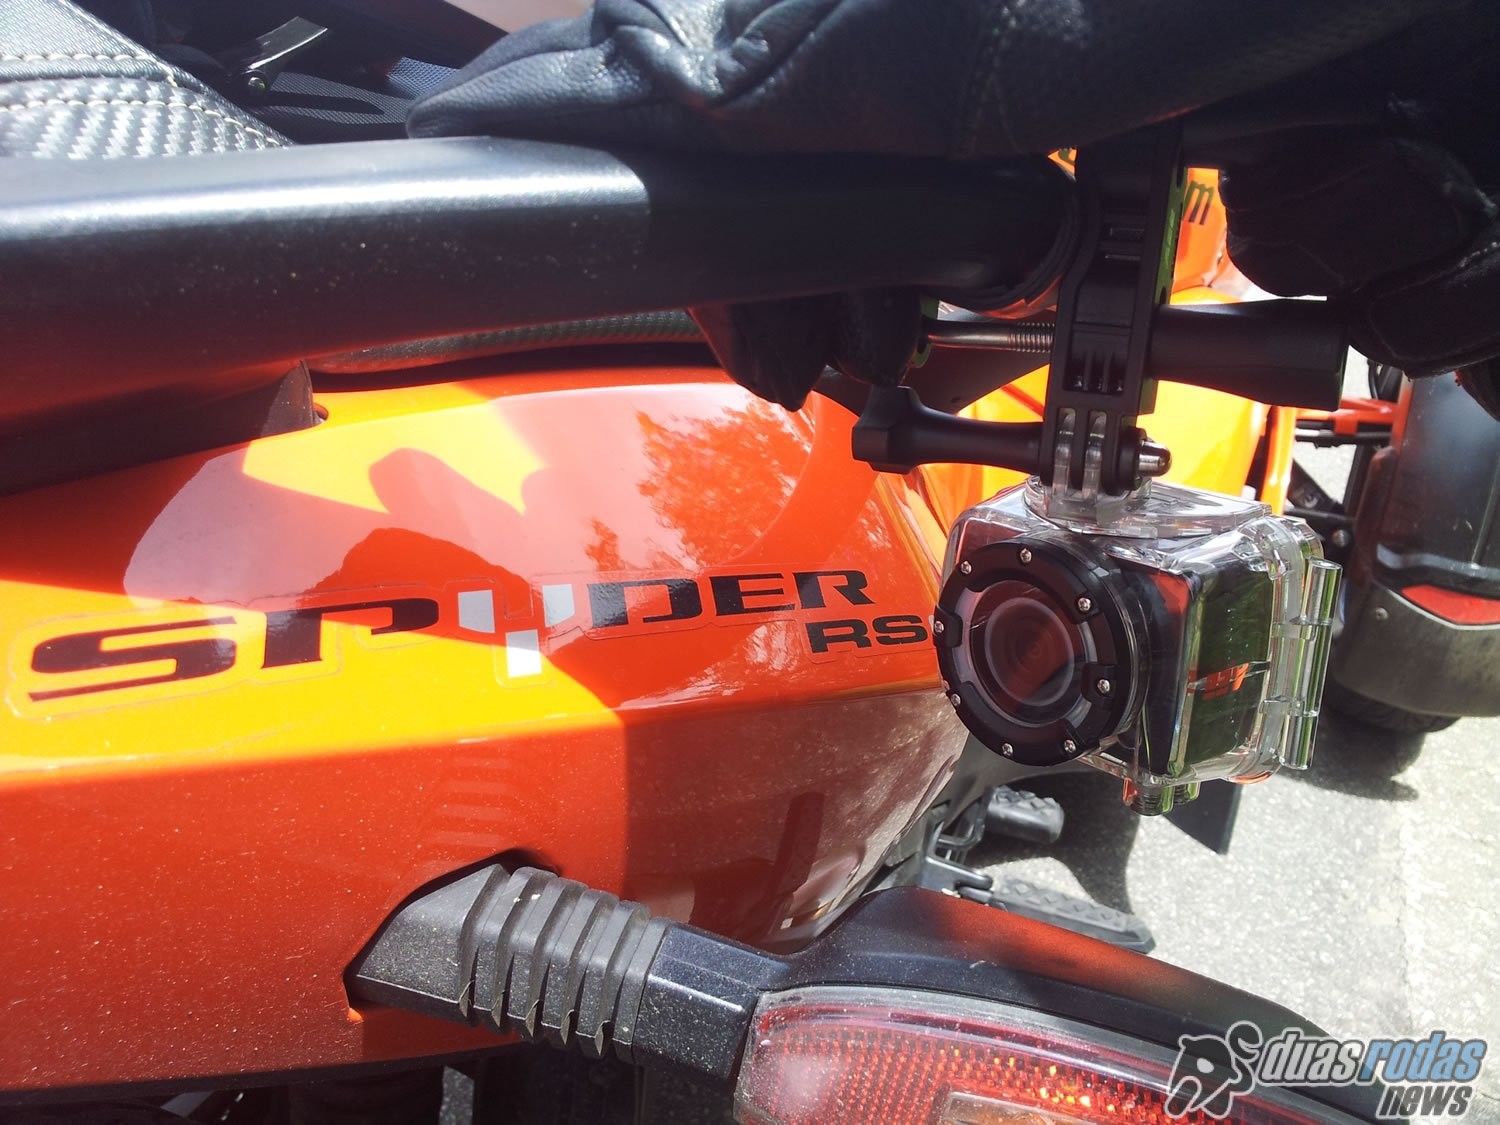 Testes de motocicletas de um ângulo diferenciado e exclusivo com câmeras Xtrax